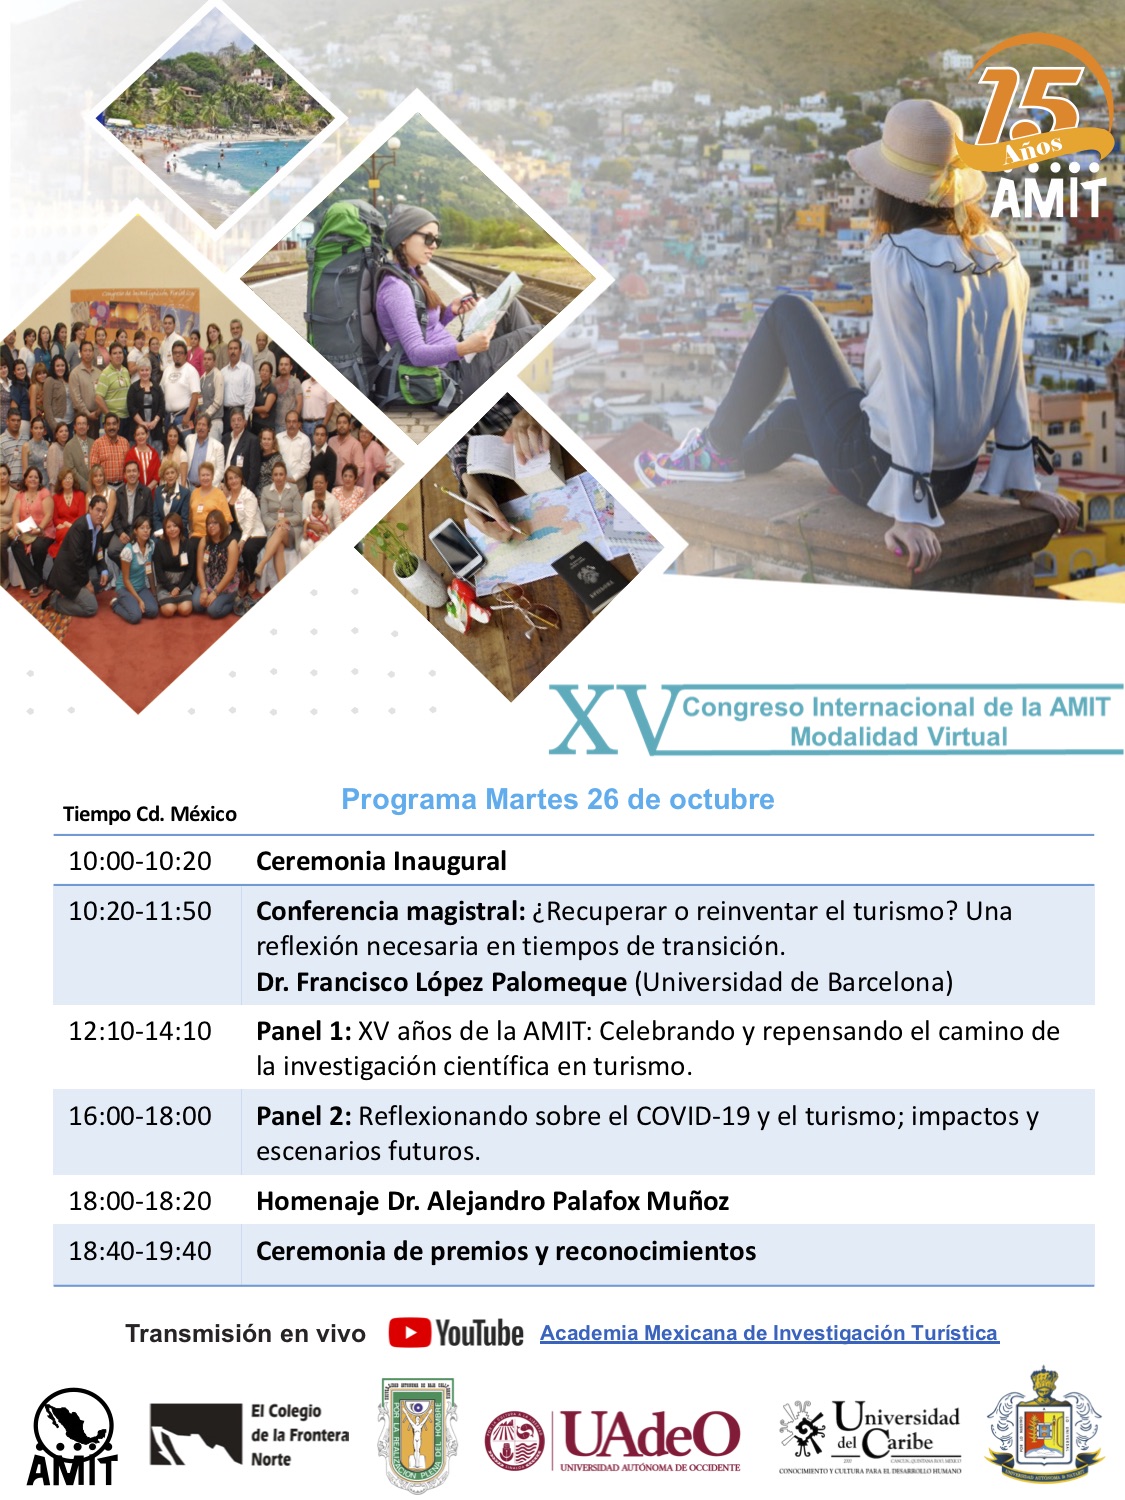 XV Congreso Internacional de la AMIT. Modalidad Virtual. 26-29 octubre de 2021 - 6